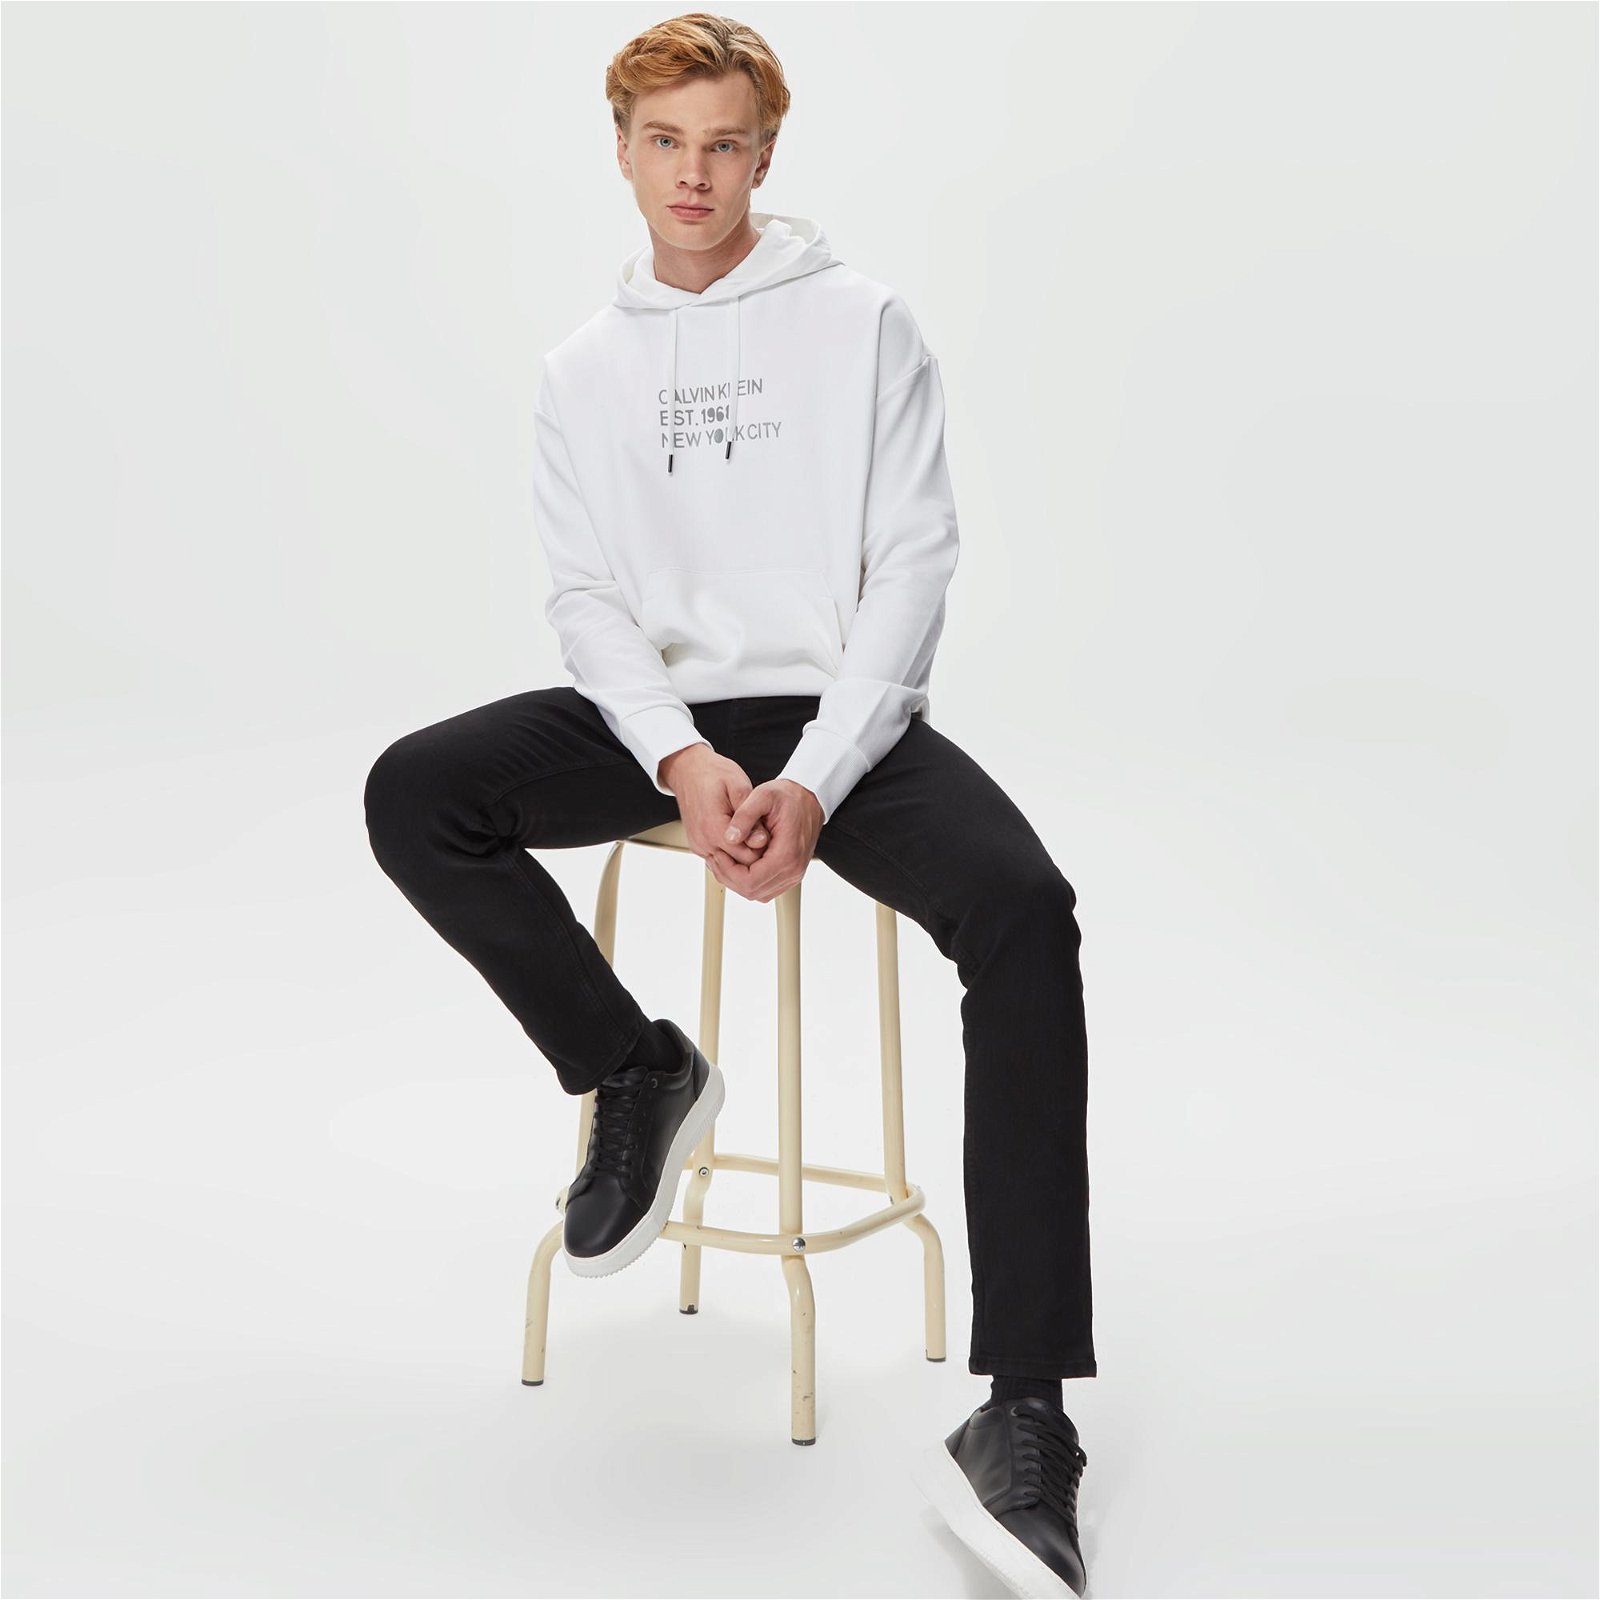 Calvin Klein Mixed Print Stencil Logo Beyaz Erkek Sweatshirt